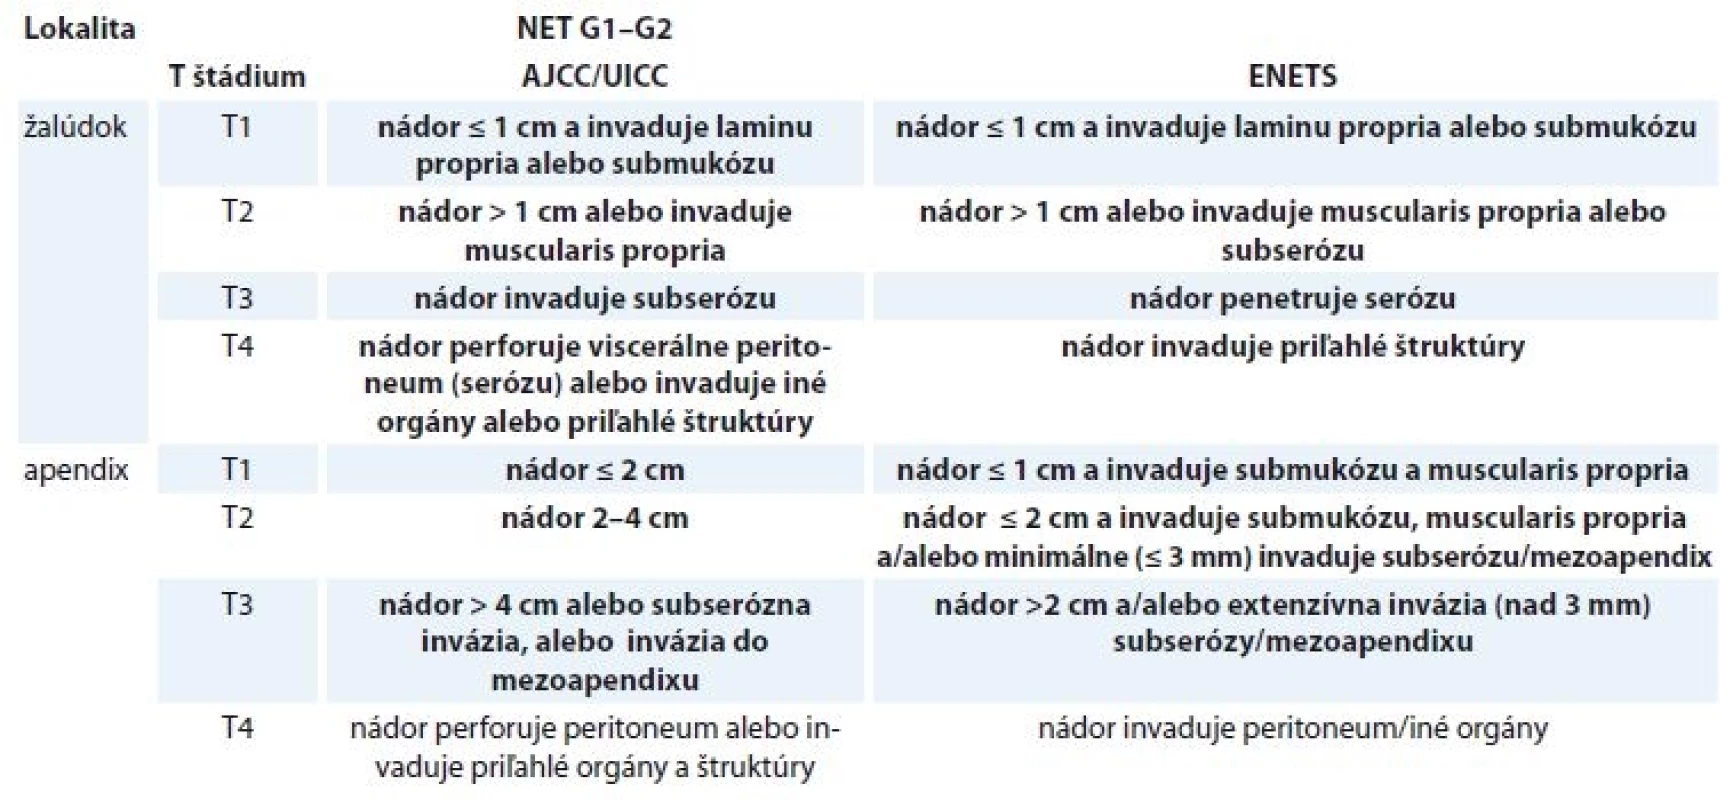 Porovnanie T štádií TNM klasifikácie pre NETs G1 a G2 žalúdka a apendixu podľa AJCC/UICC [34,35] a ENETS [30,31].